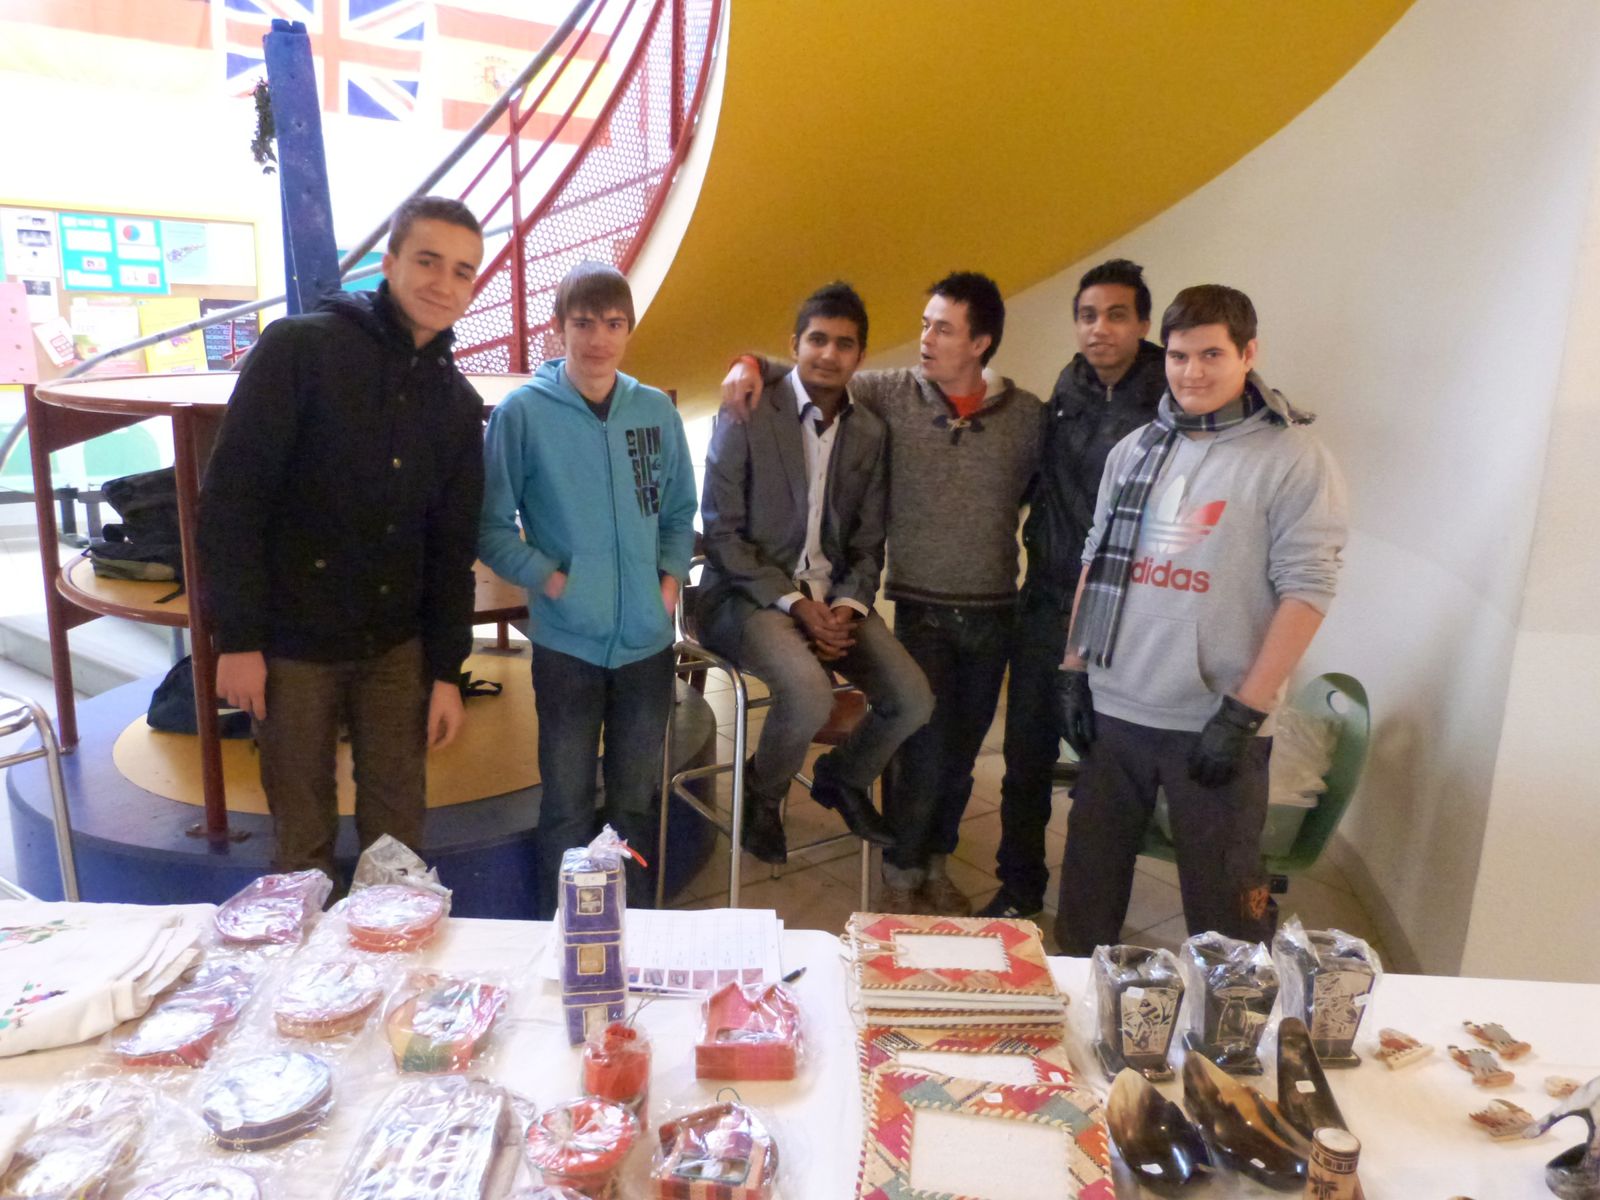 Décembre 2012 : Journée de vente en faveur de Madagascar au sein du lycée Jean Capelle à Bergerac à l'initiative d'Adnan